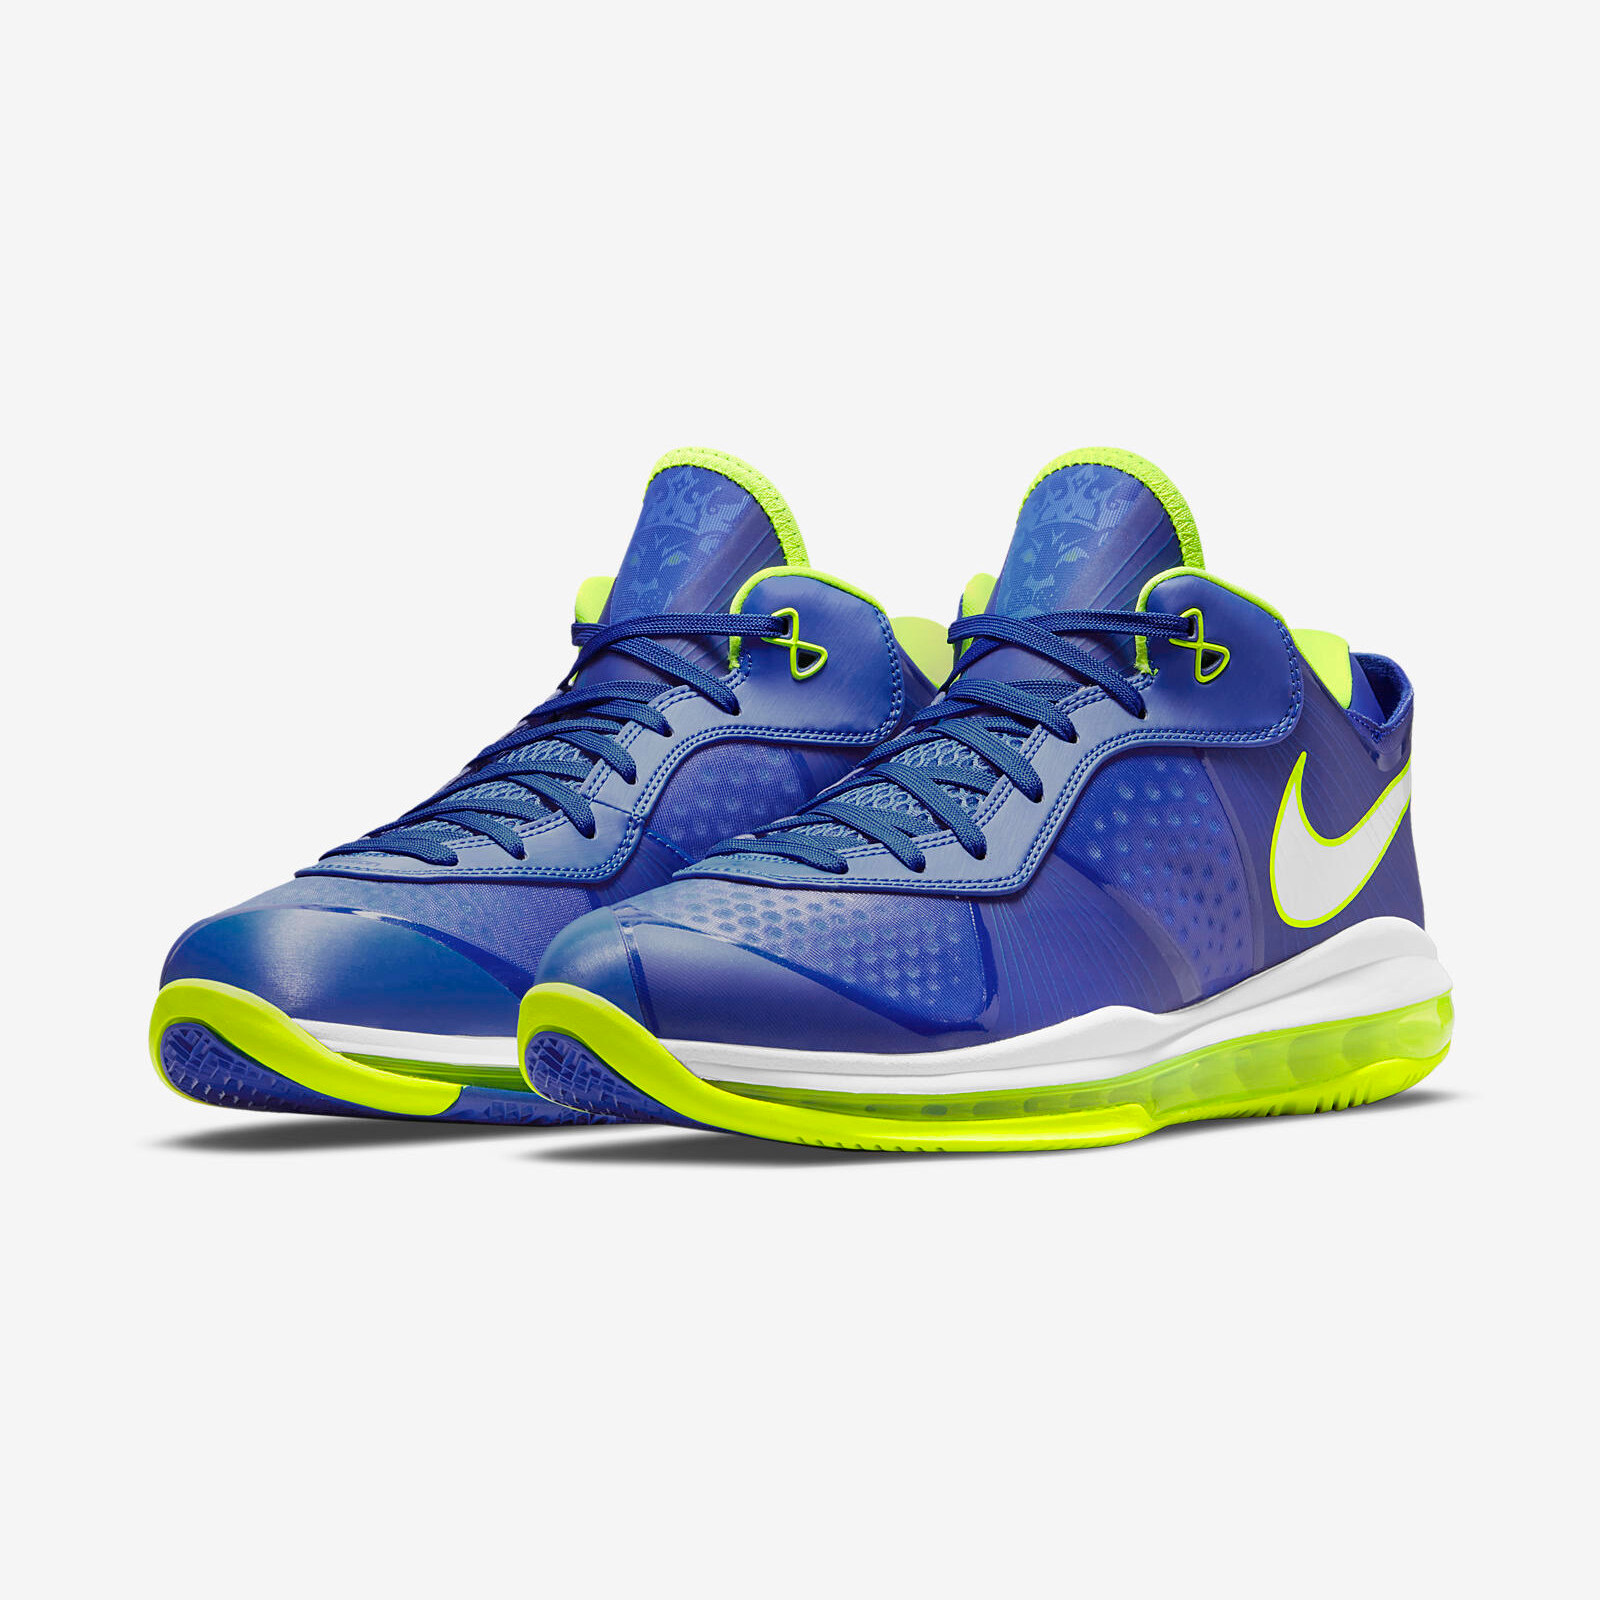 Nike LeBron 18 V2 Low
« Sprite »